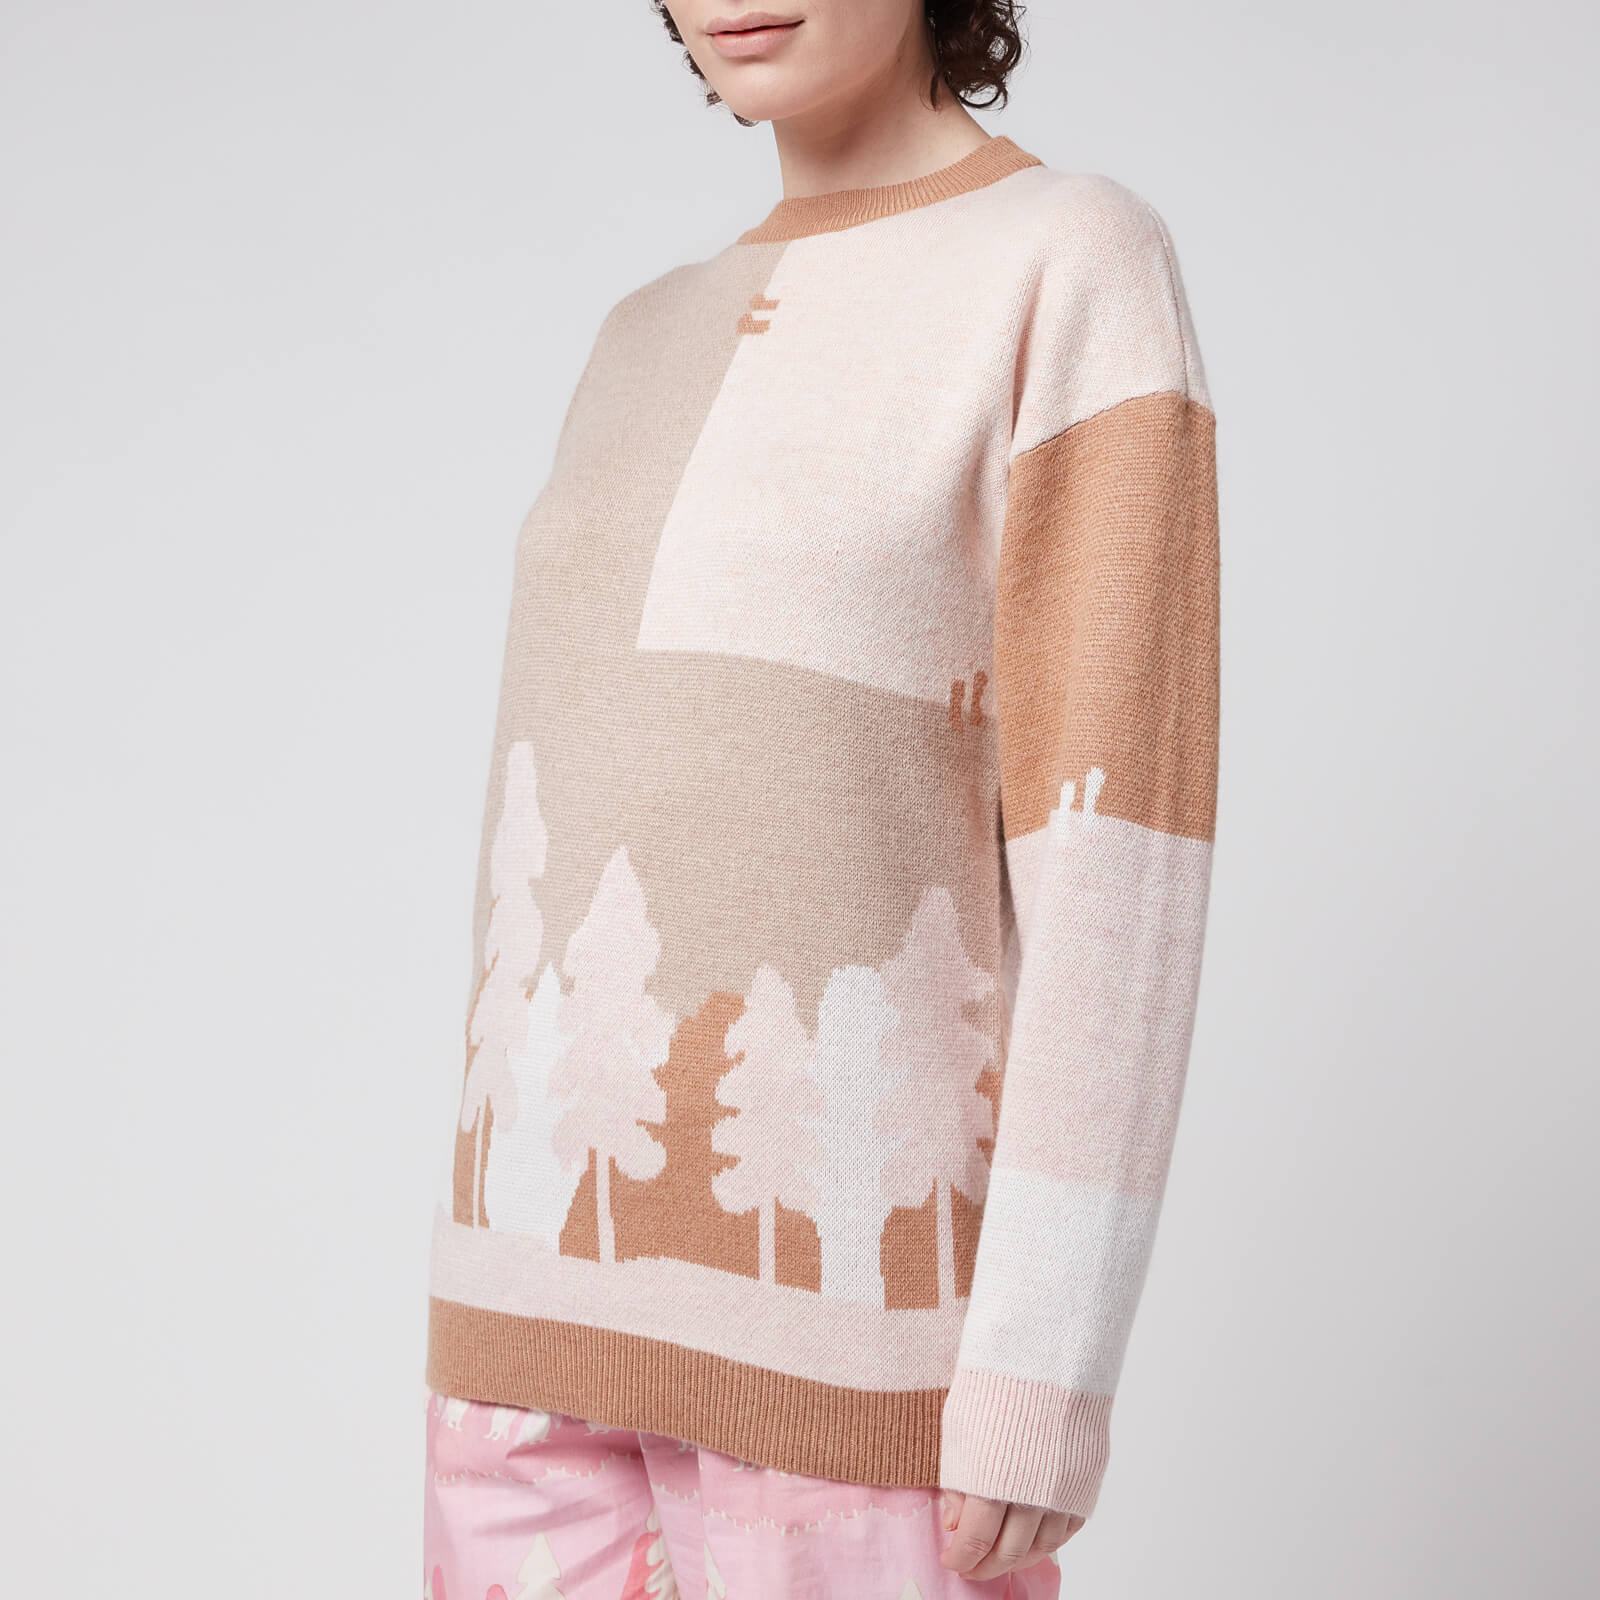 Helmstedt Women's Deseo Sweater - Jacquard Landscape - XS